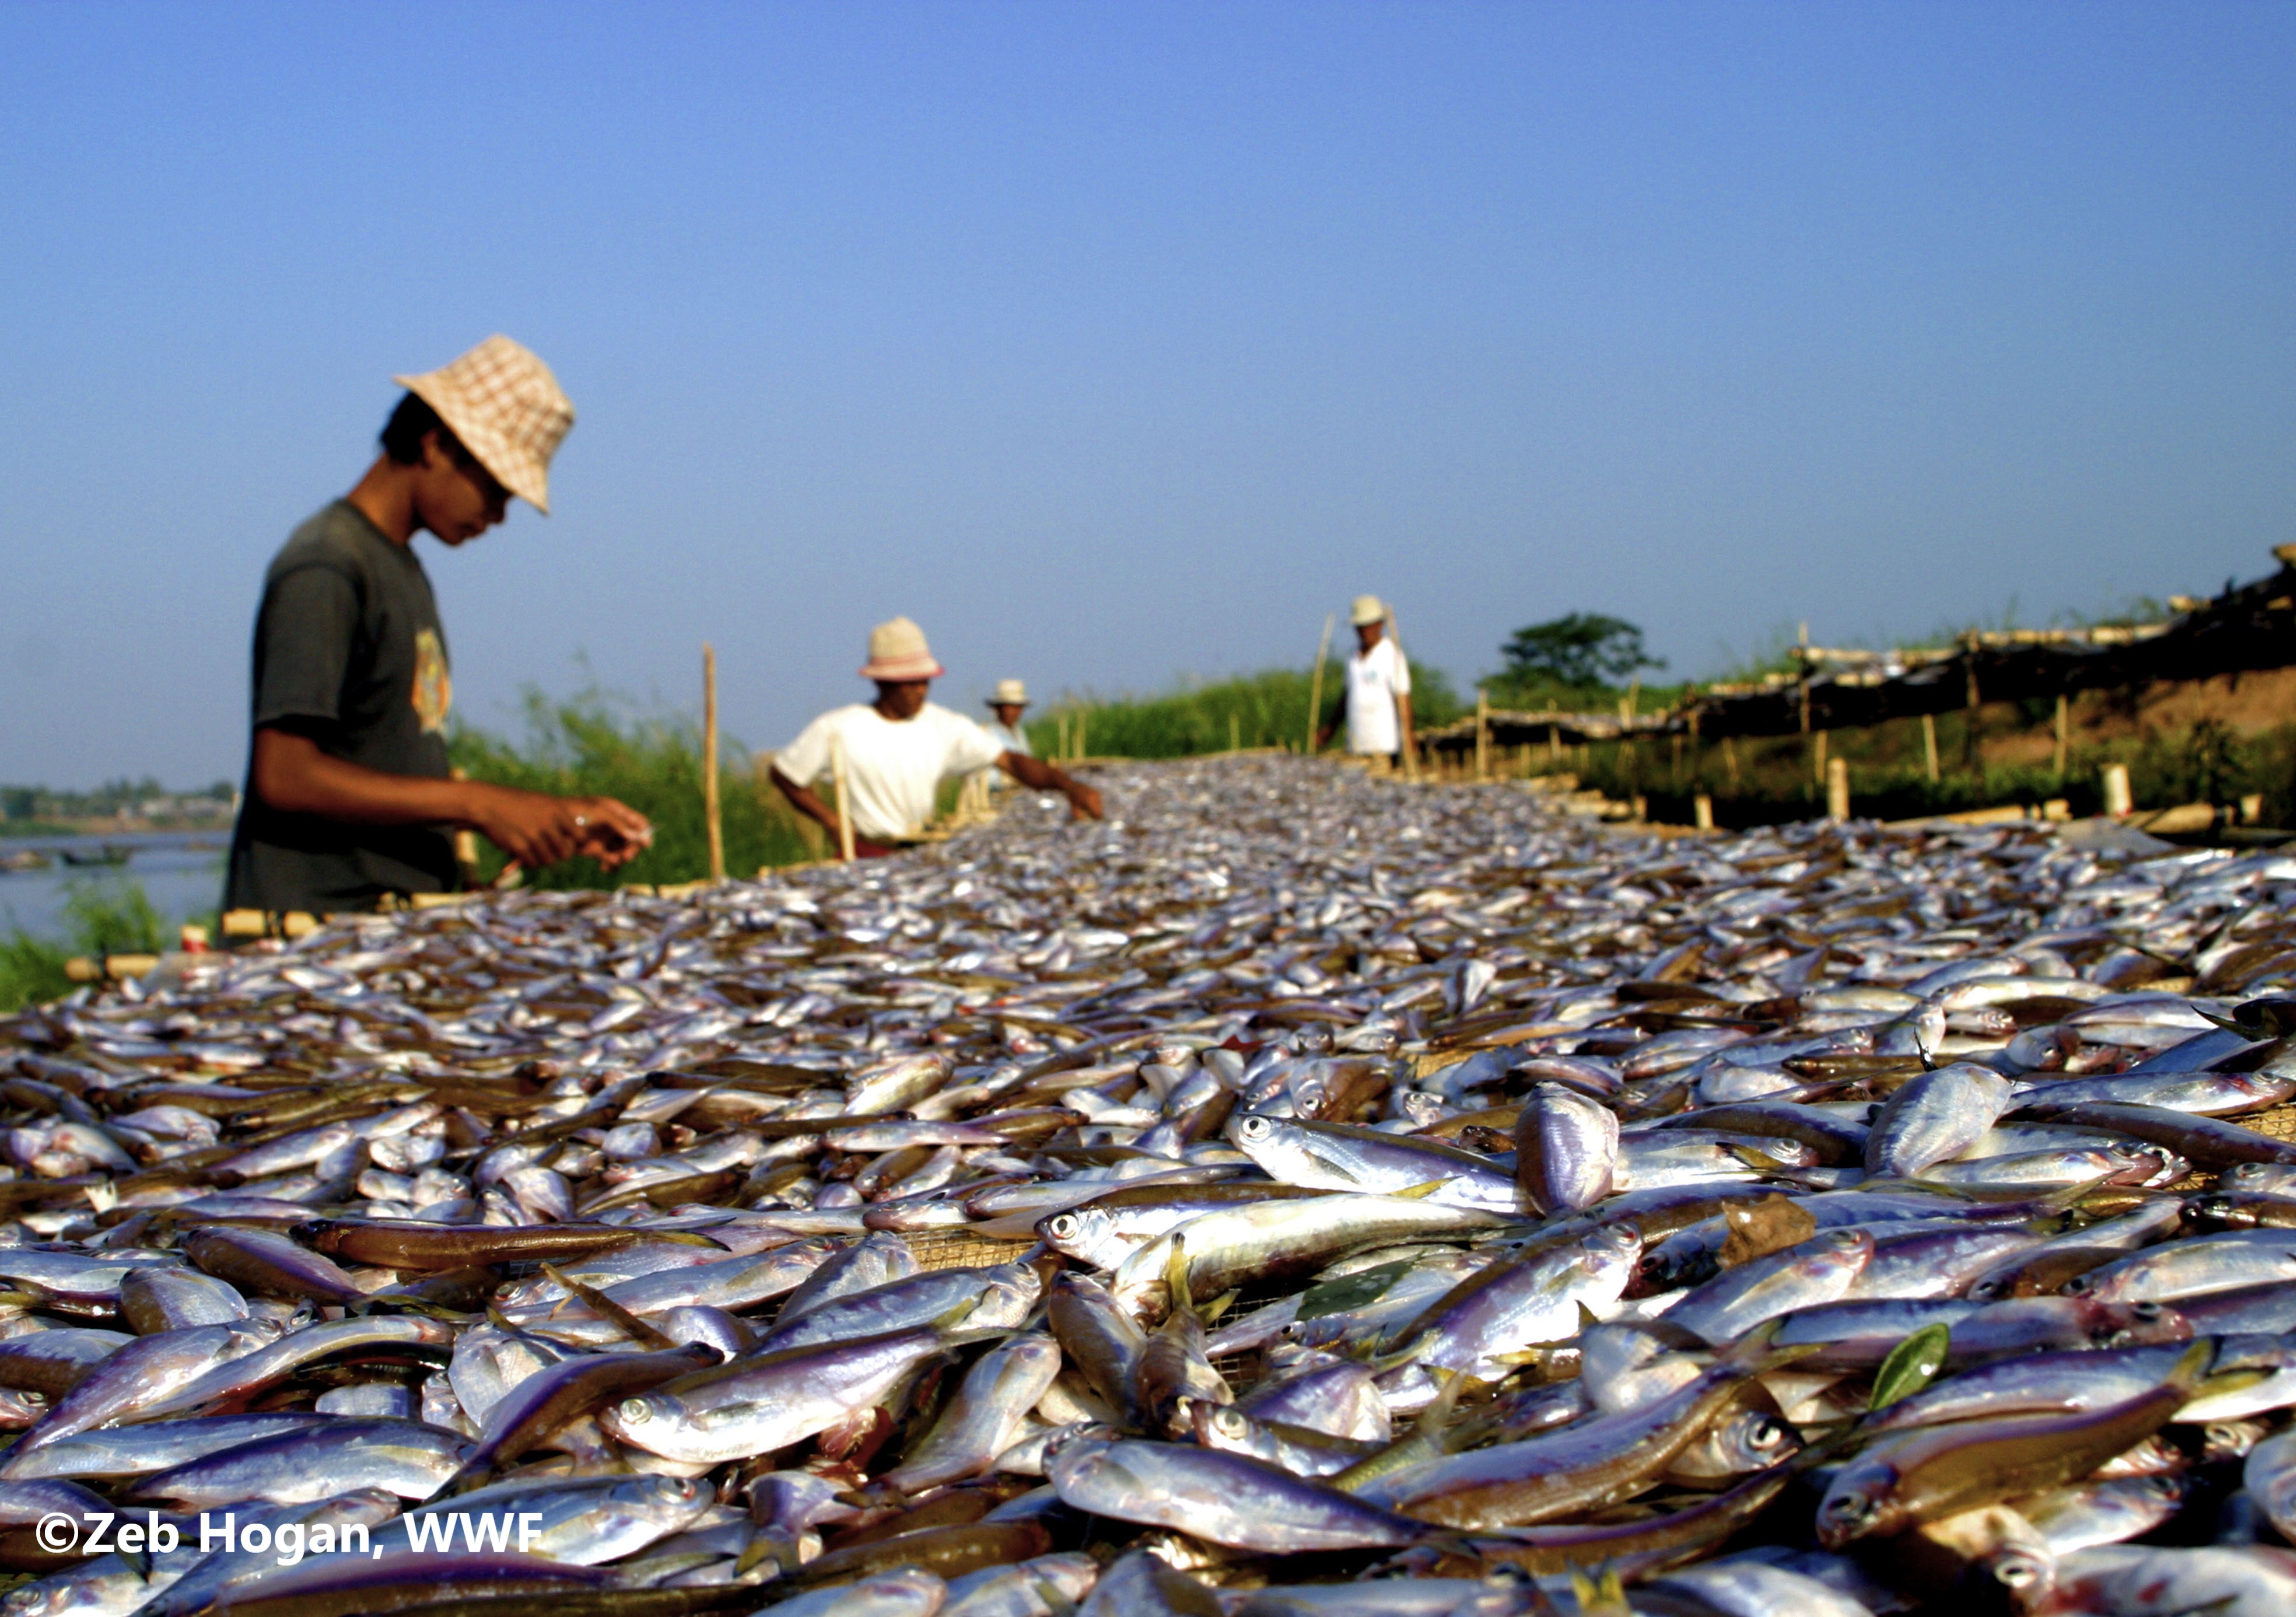 Сельское хозяйство и промыслы. Рыбы реки Меконг. Река Меконг рыбалка. Рыбное хозяйство. Рыболовство это сельское хозяйство.